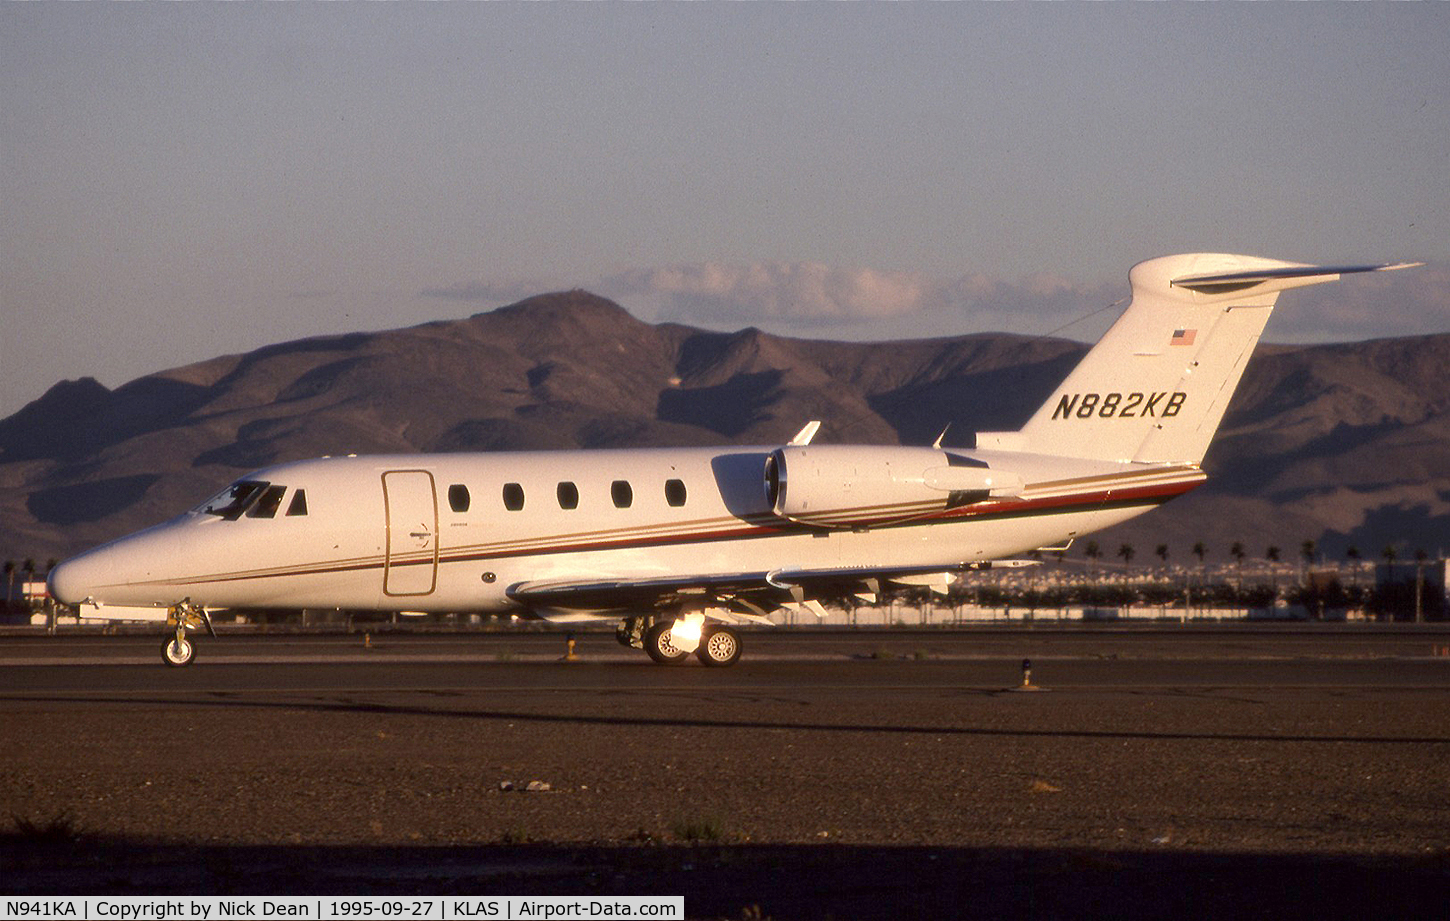 N941KA, 1985 Cessna 650 Citation III C/N 650-0095, KLAS (Seen here as N882KB this airframe is currently registered N941KA as posted)